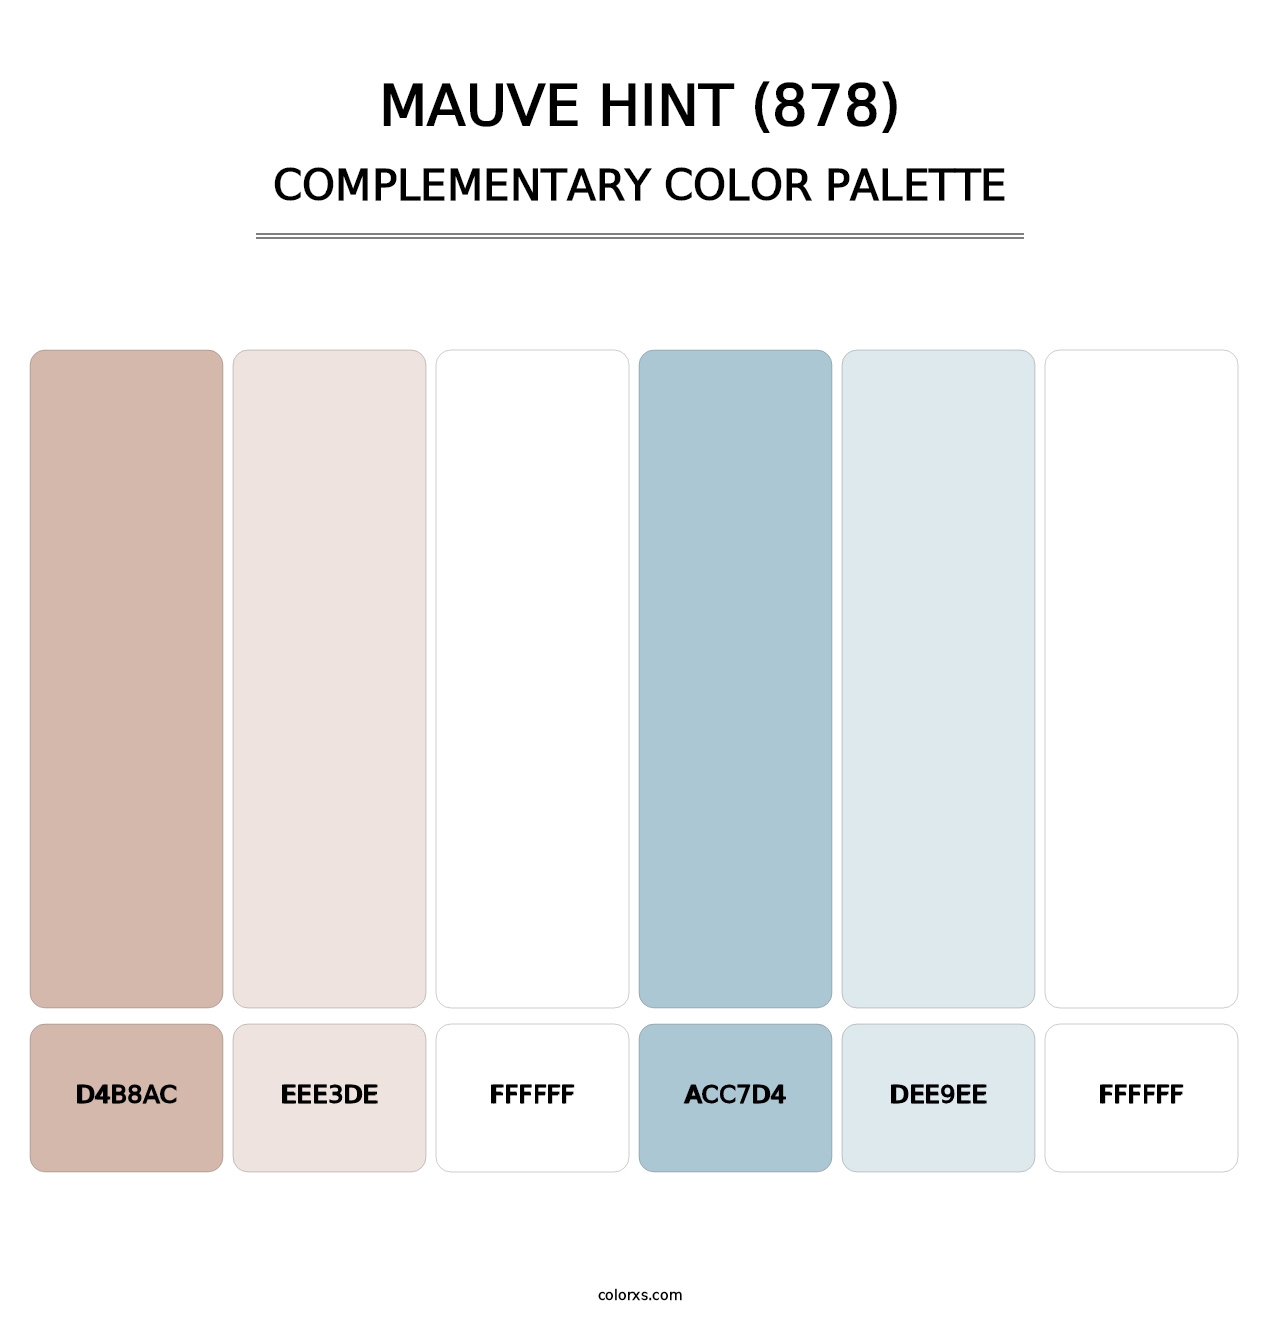 Mauve Hint (878) - Complementary Color Palette